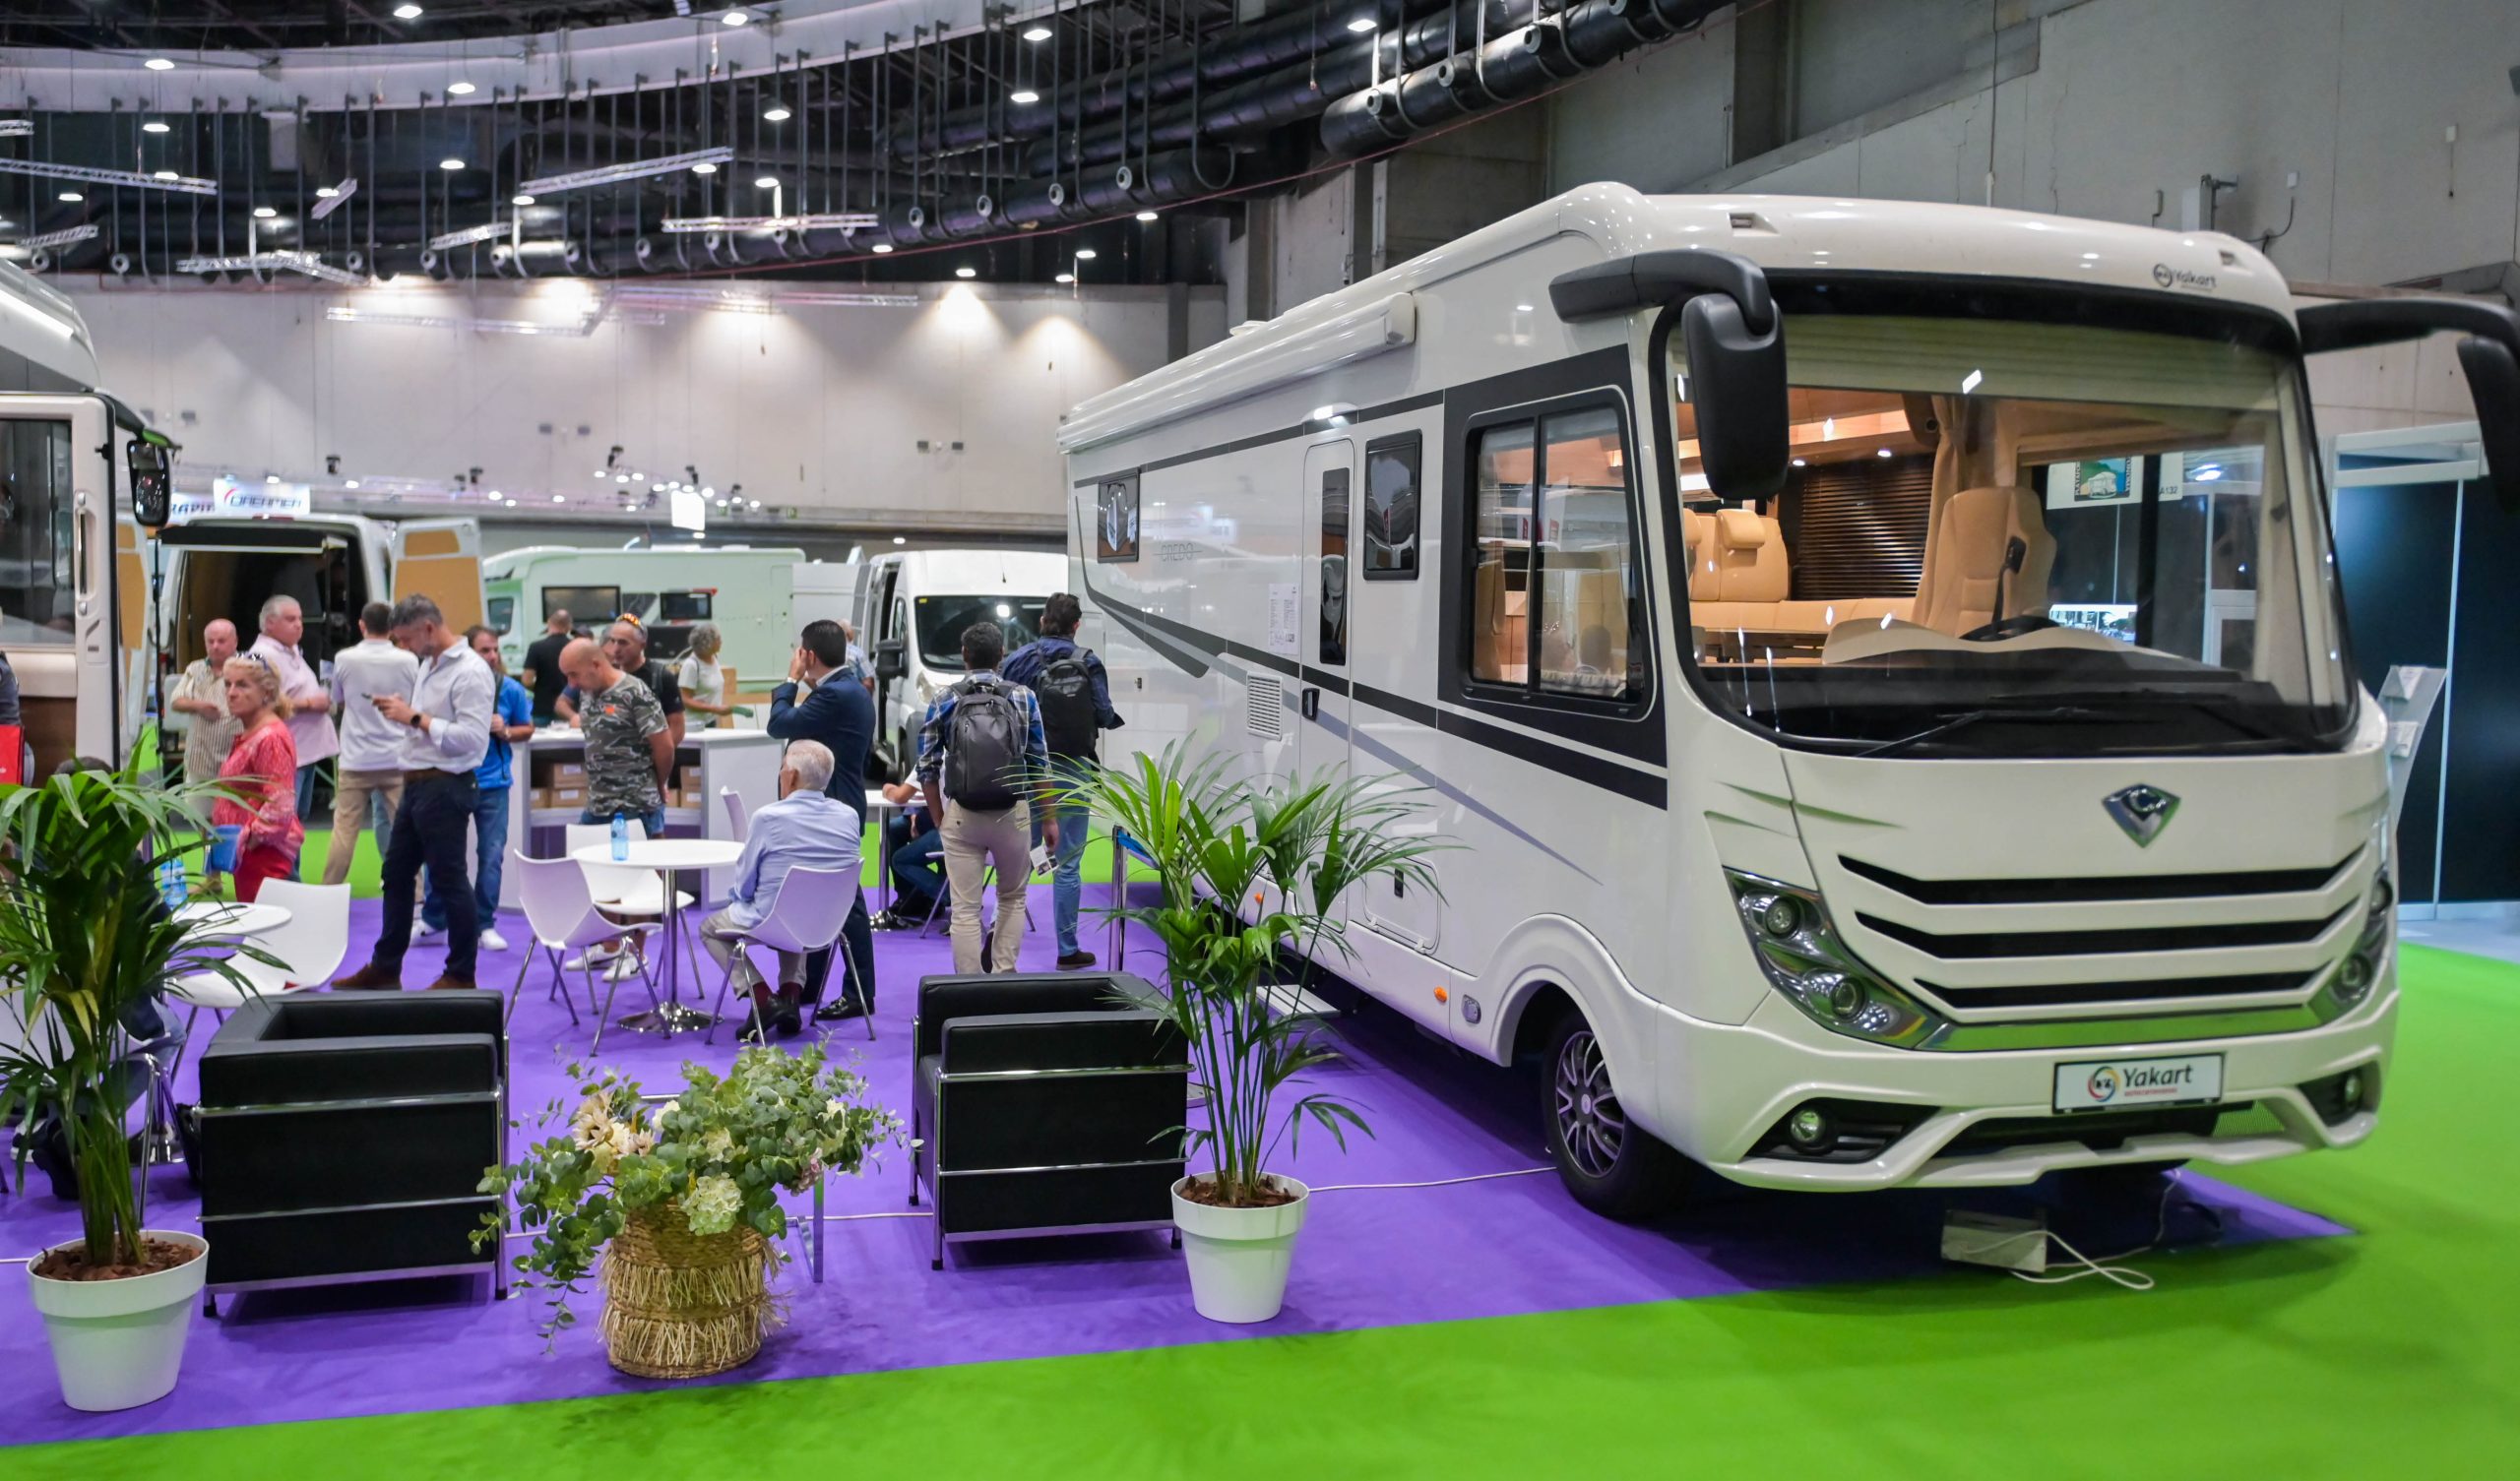 Autocaravanas de lujo, minicaravanas para “rutear” y campers sostenibles: las innovaciones del camping y el caravaning que te esperan en IFEMA Madrid hasta este domingo